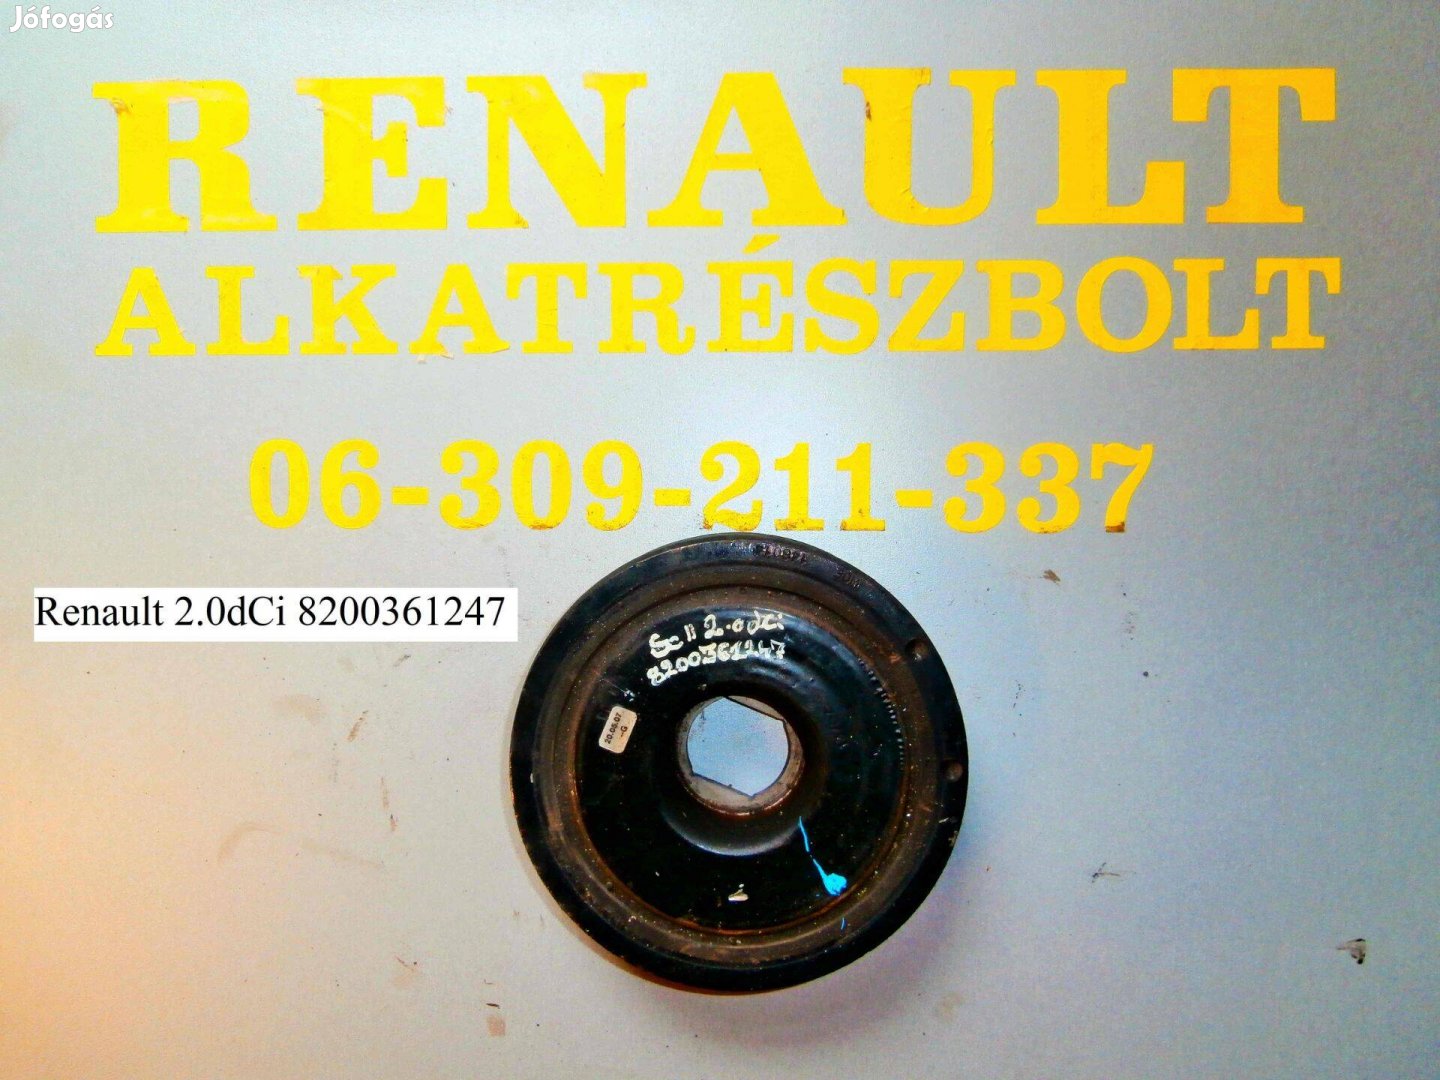 Renault 2.0dCi 8200361247 főtengely ékszíjtárcsa